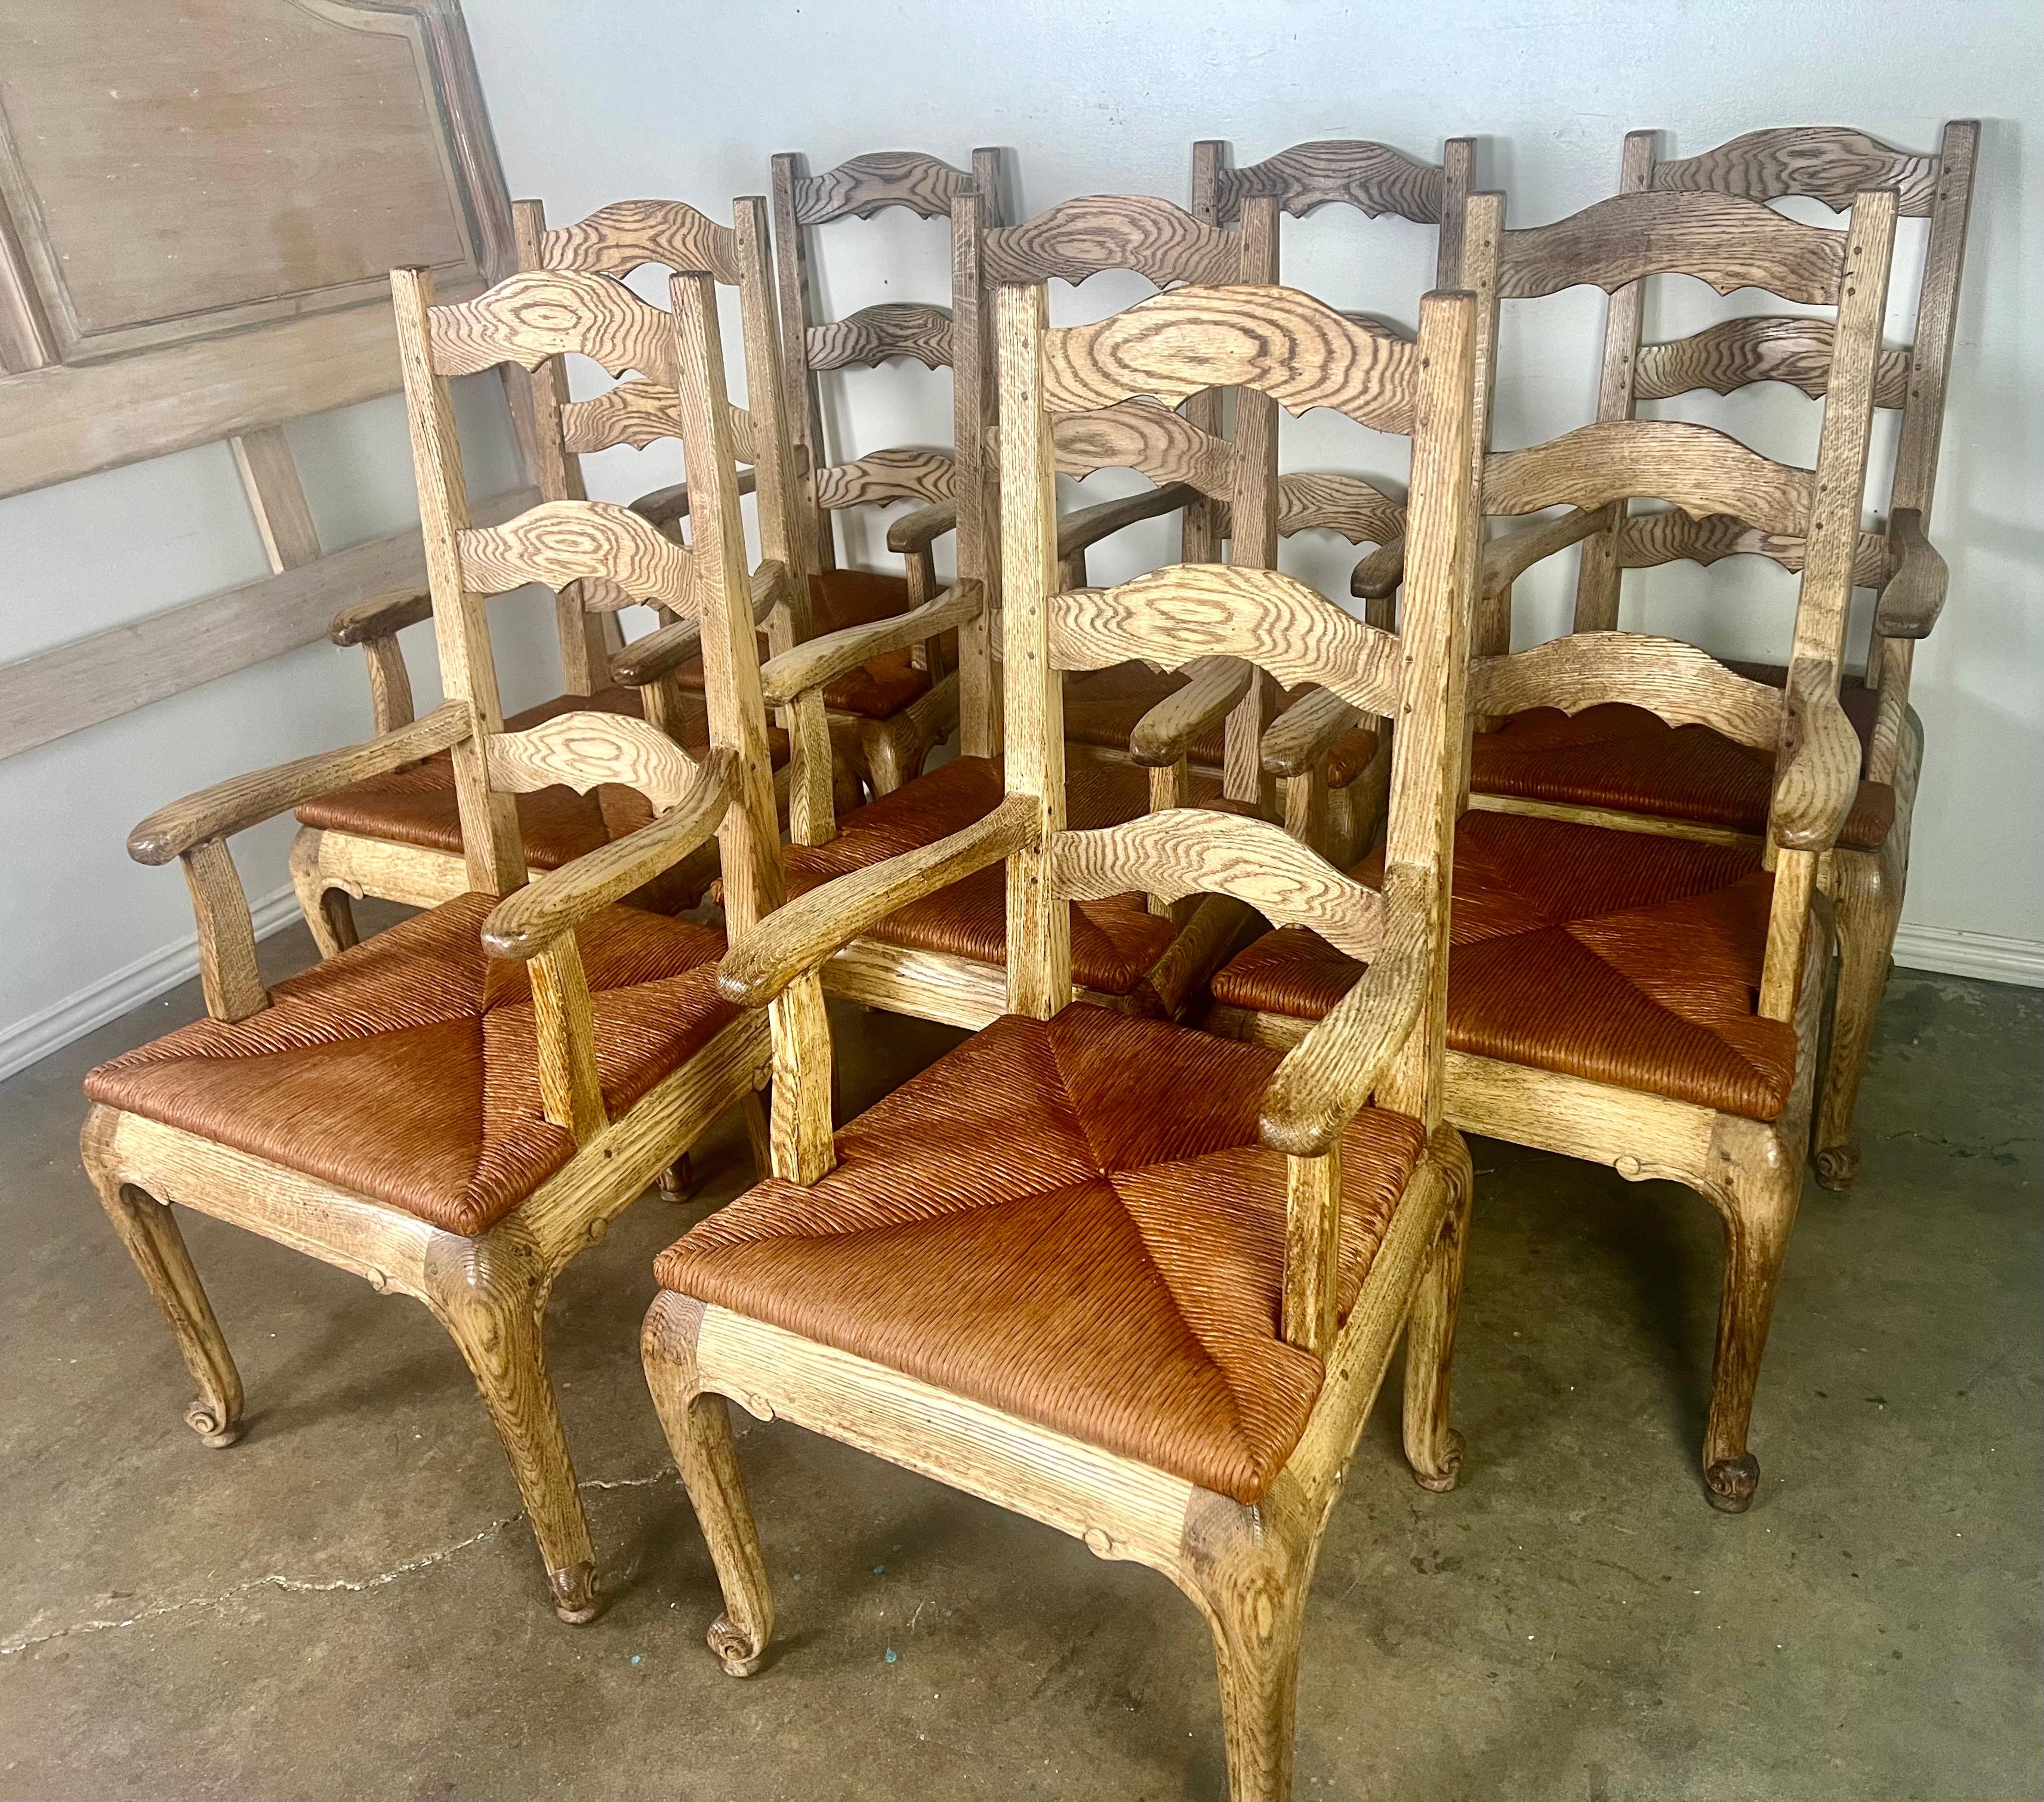 Satz von acht französischen Provincial Ladderback-Sesseln mit Binsen-Sitzen, hergestellt von Le Monde du Bois, einem französischen Möbelhersteller aus den frühen 1900er Jahren.  Diese Stühle fangen die rustikale Eleganz und die raffinierte